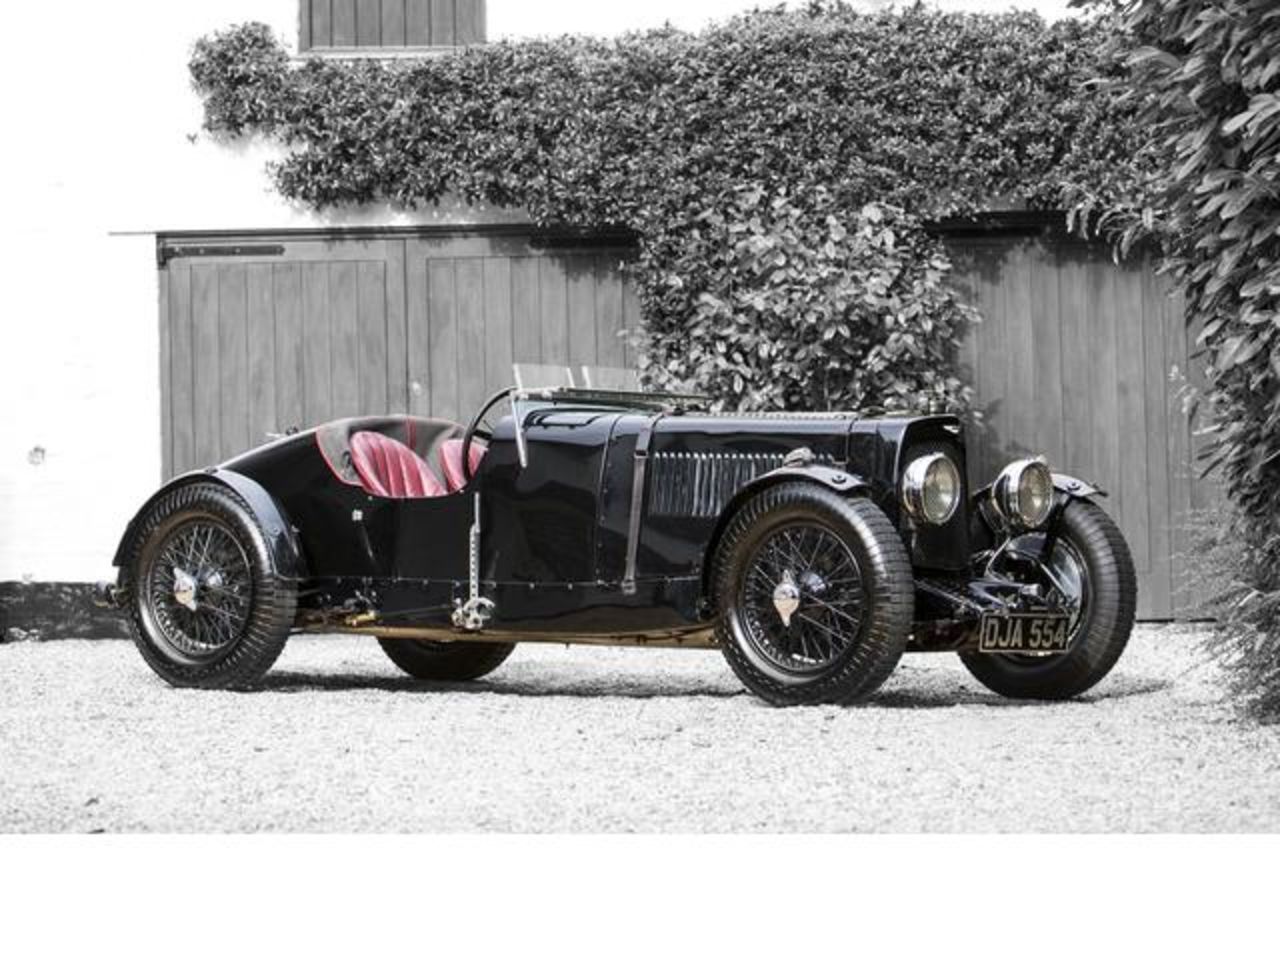 Este Aston Martin "Ulster" fabricado en 1934 fue vendido por 2,13 millones de dólares. Ésta es una réplica del automóvil del equipo de carreras de la compañía de 1934, se fabricó para los corredores aficionados por tan sólo 1.000 dólares en esa época. 